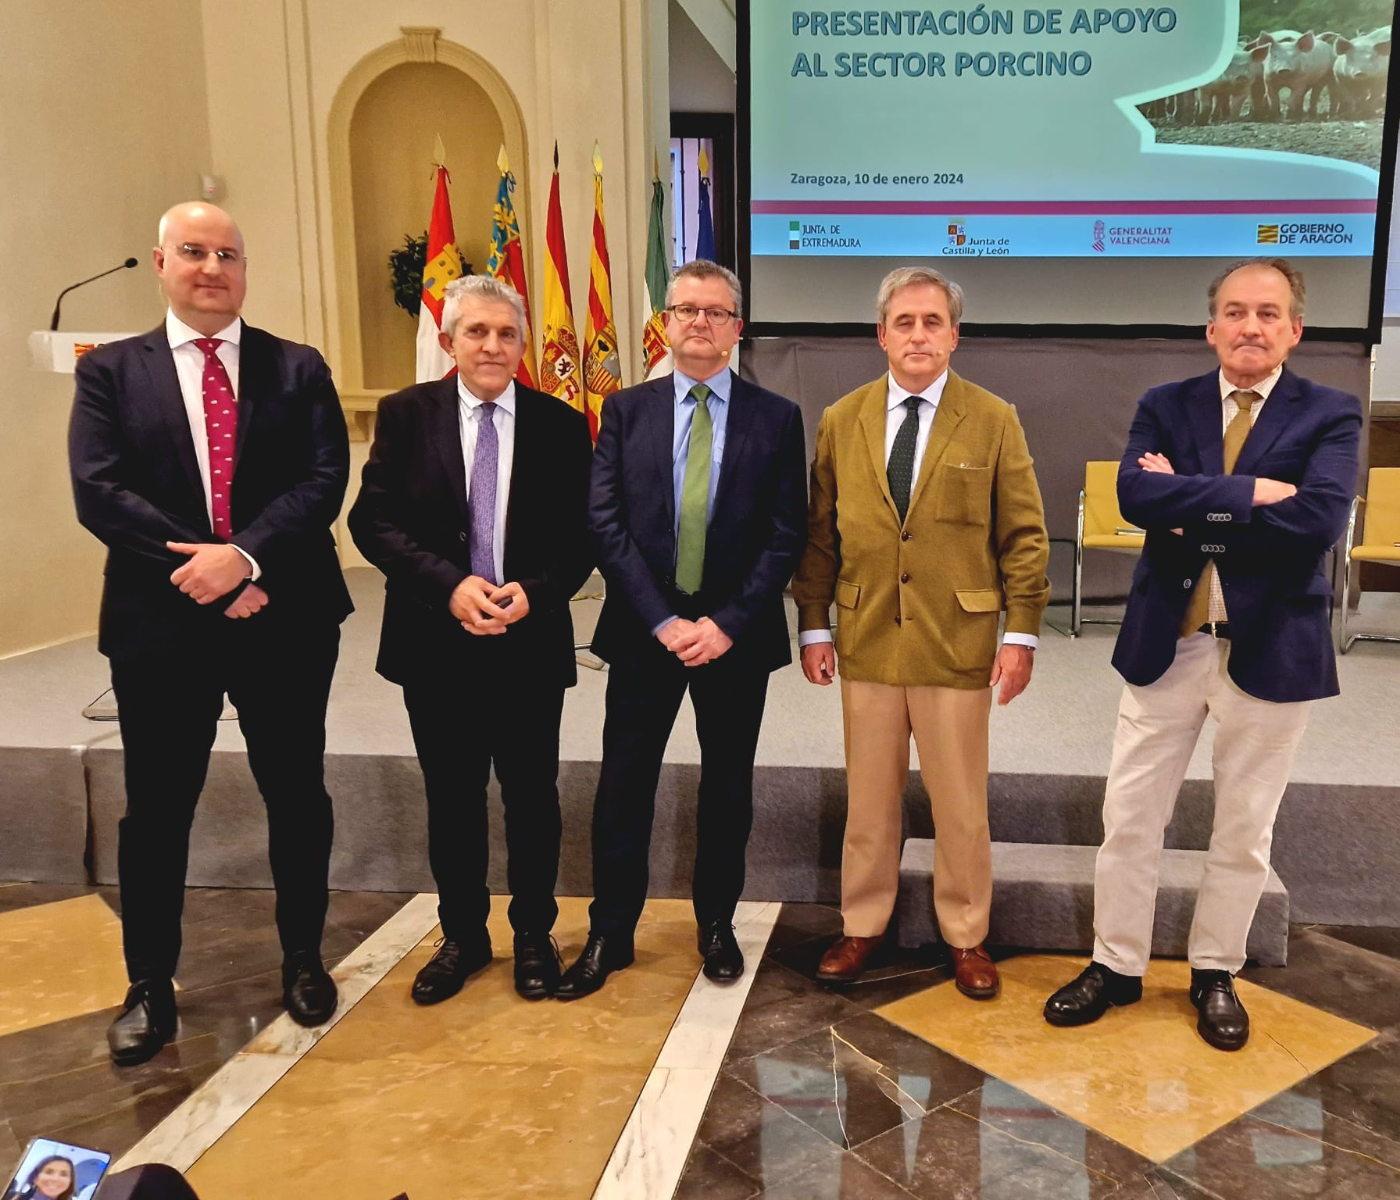 Aragón, Castilla y León, Extremadura y Valencia lideran el apoyo al sector del porcino